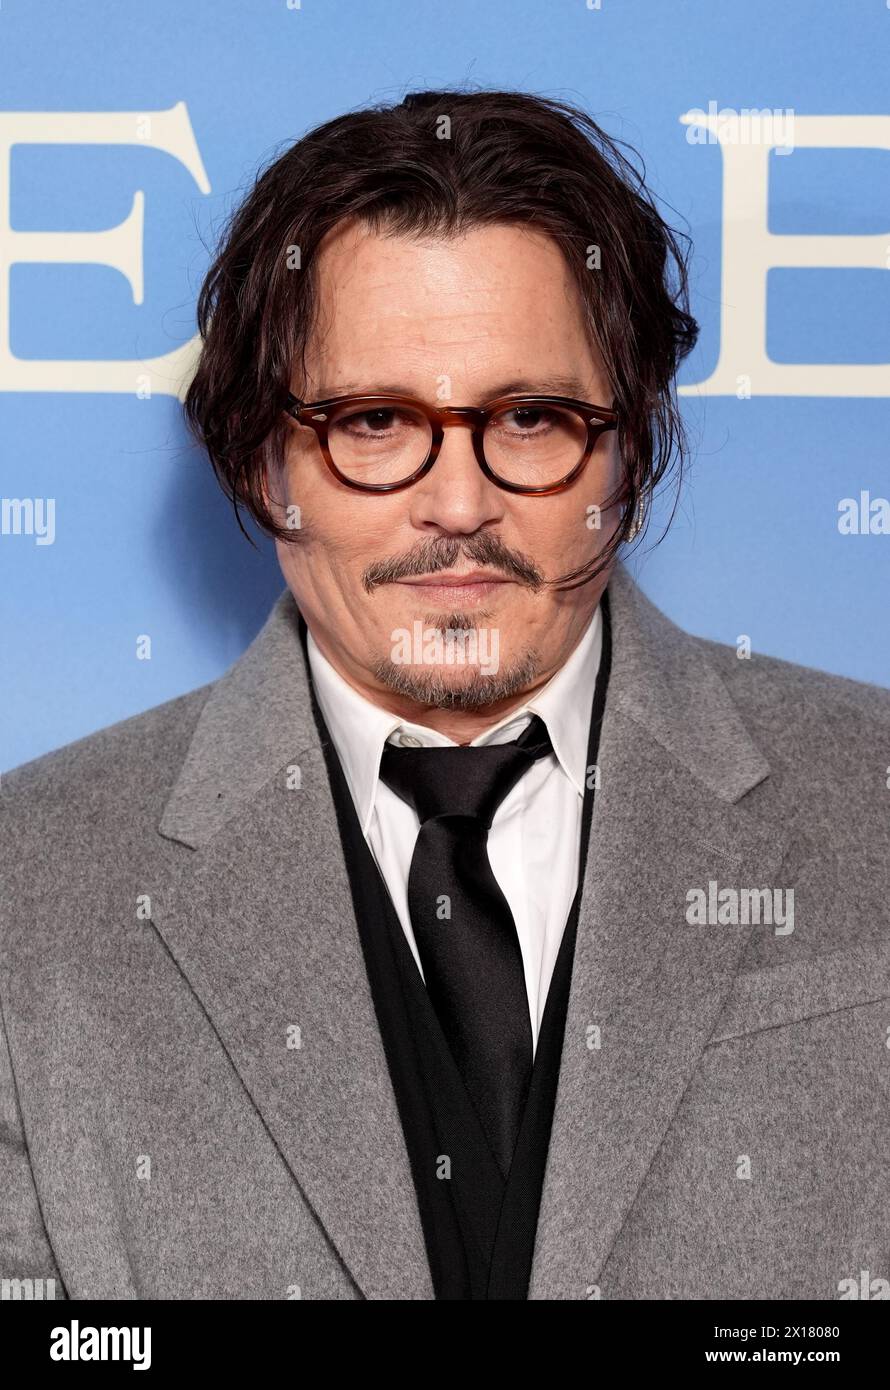 Johnny Depp kommt zur britischen Premiere von Jeanne du Barry im Londoner Curzon Mayfair. Bilddatum: Montag, 15. April 2024. Stockfoto